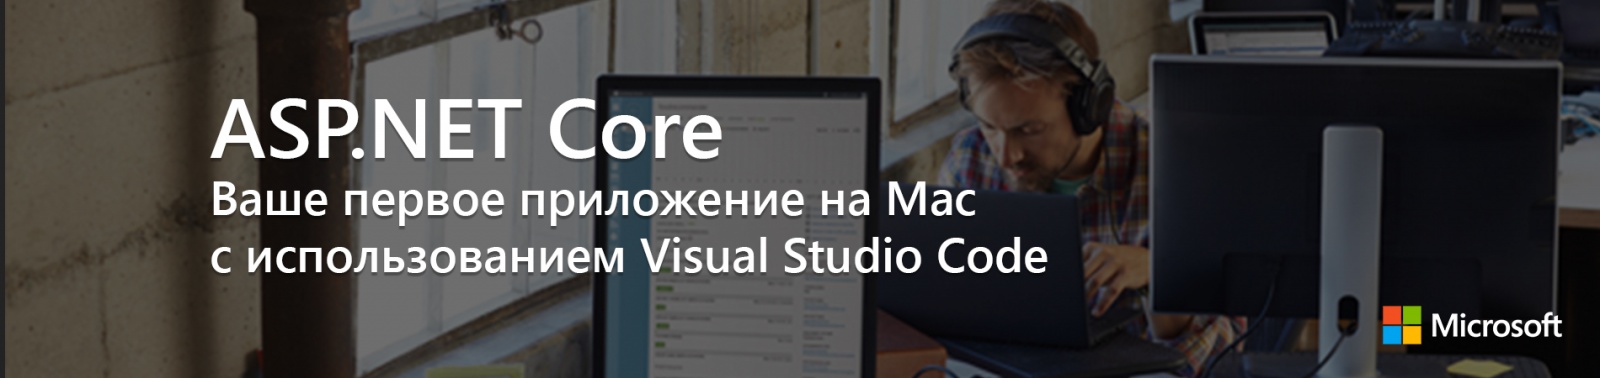 ASP.NET Core: Ваше первое приложение на Mac c использованием Visual Studio Code - 1